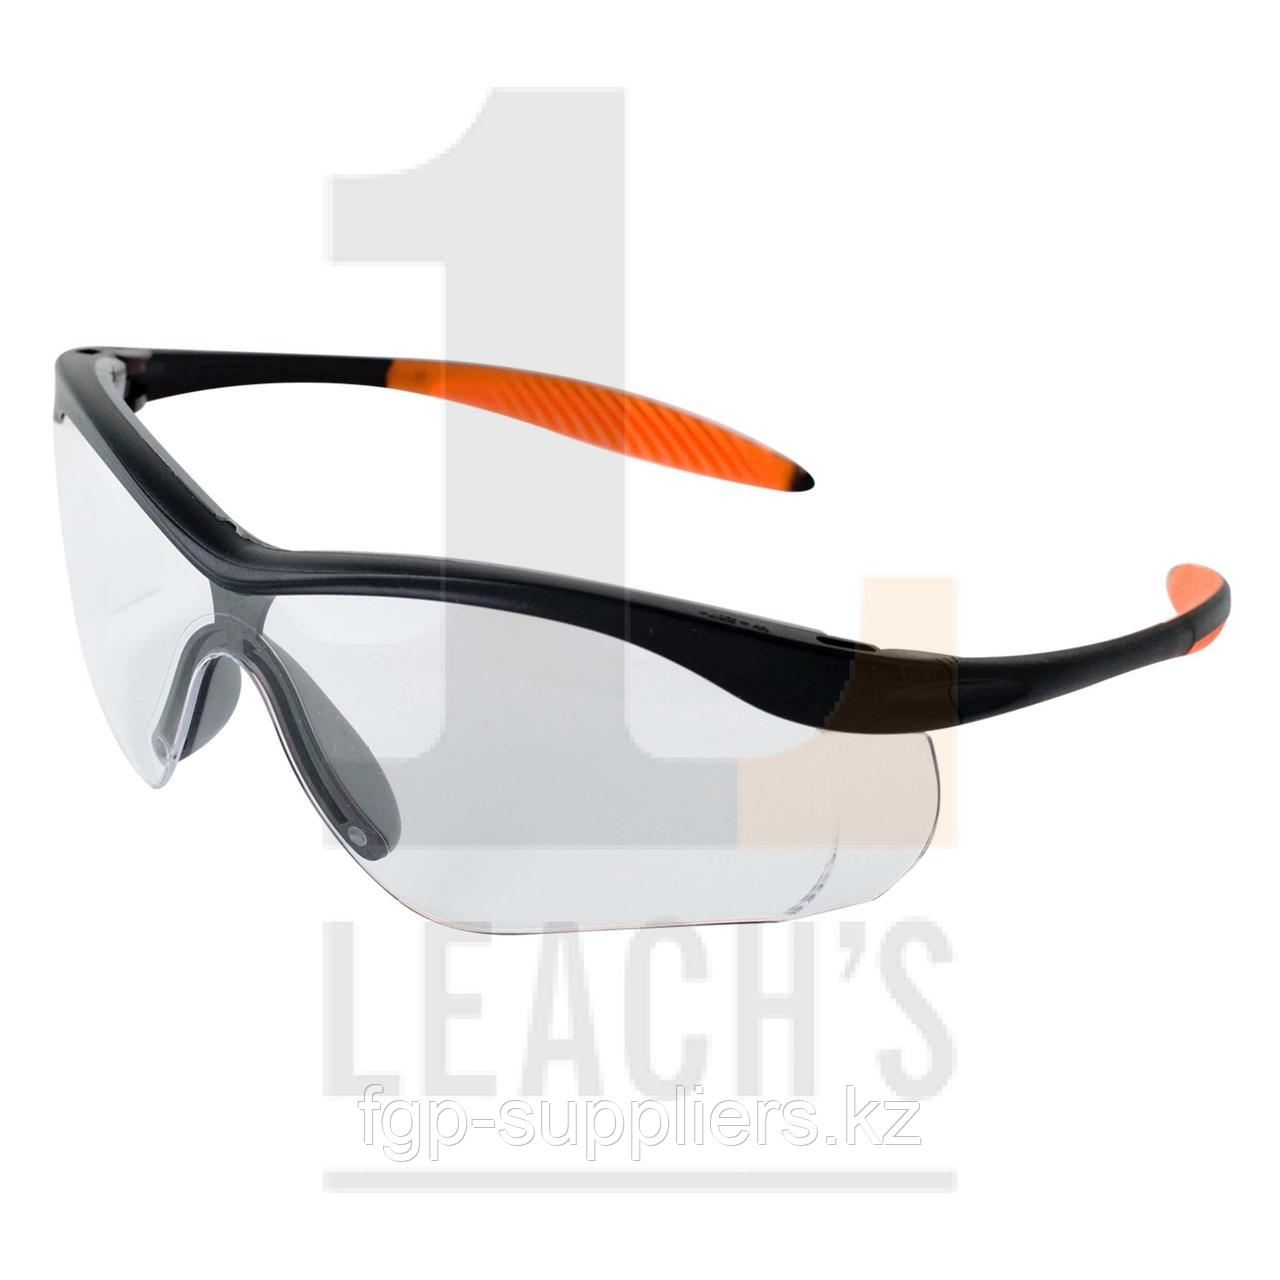 Lucerne Safety Specs, Anti-Scratch (Clear or Tinted Lens) / Lucerne защитные очки, устойчивые к царапинам  (прозрачные или тонированные стекла)